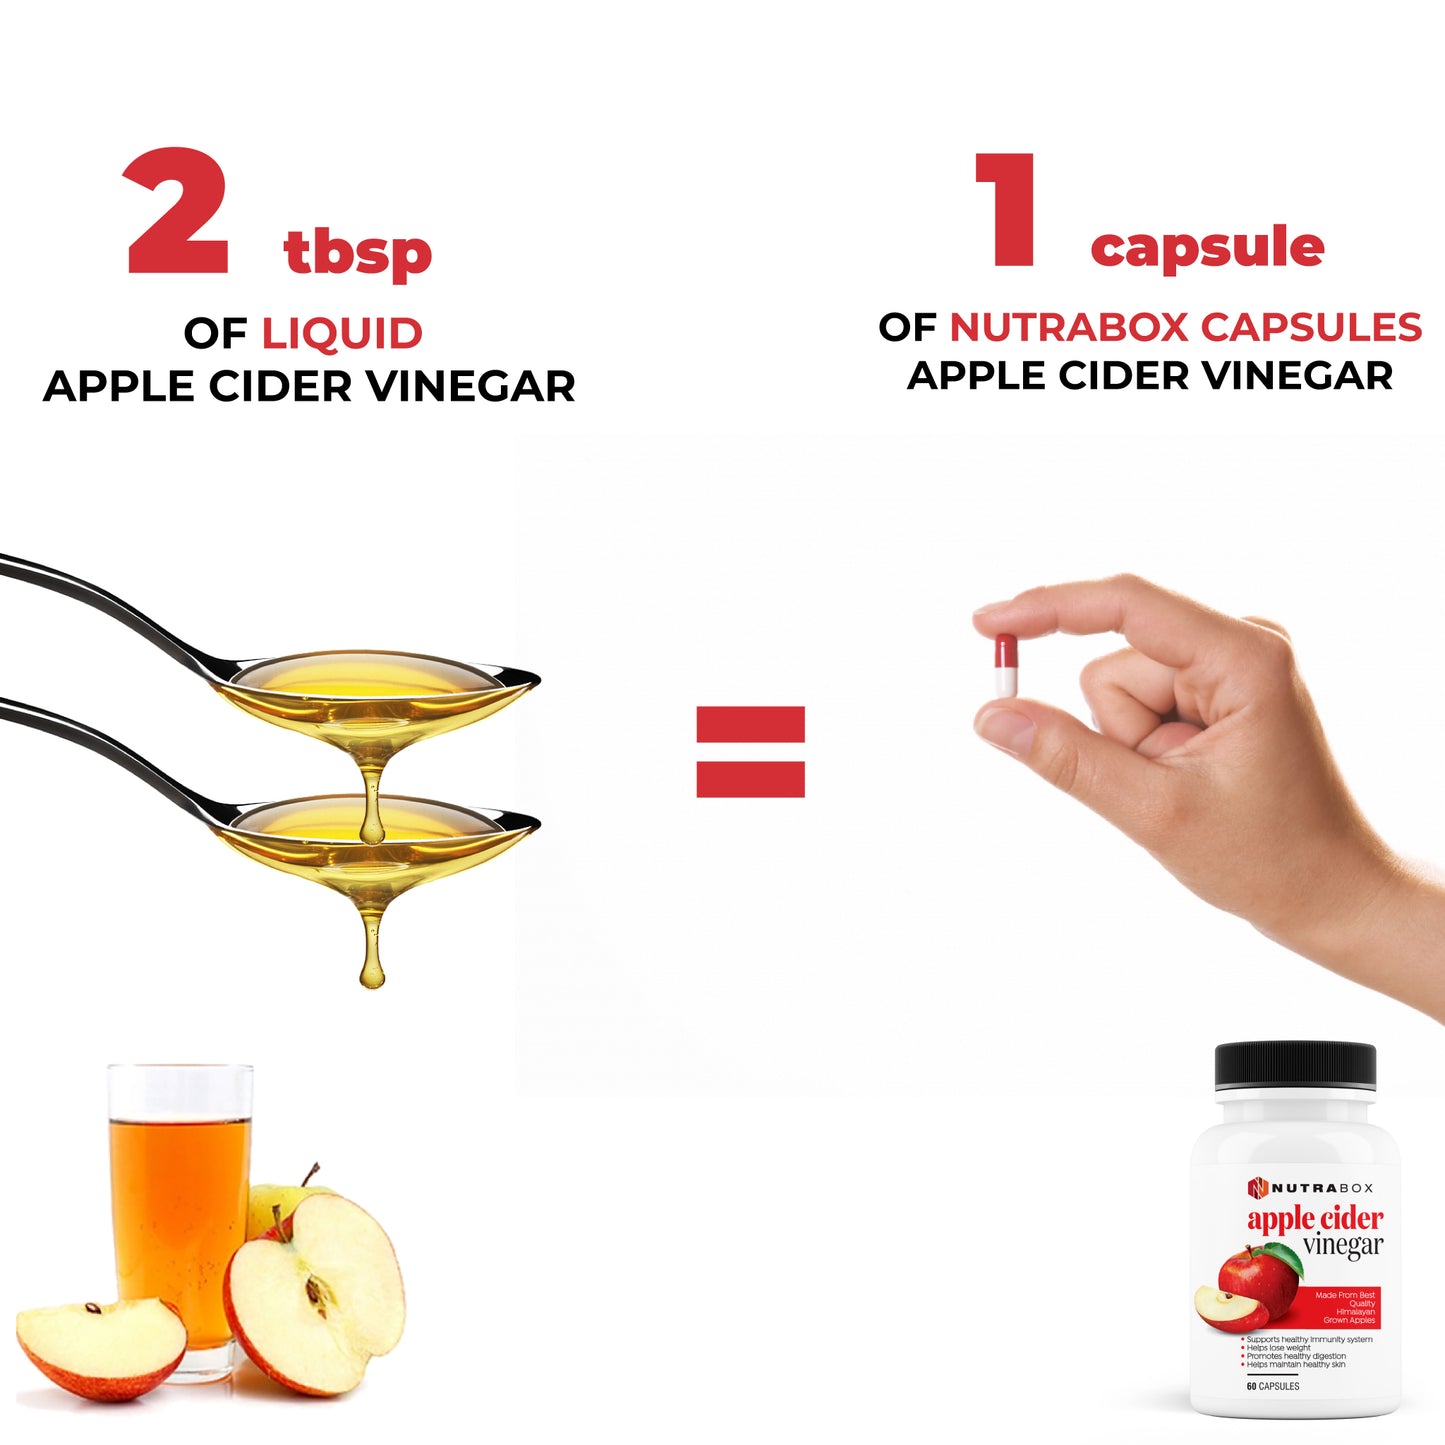 Apple Cider Vinegar Capsules - Buy 1 Get 1 Free (120 Capsules)